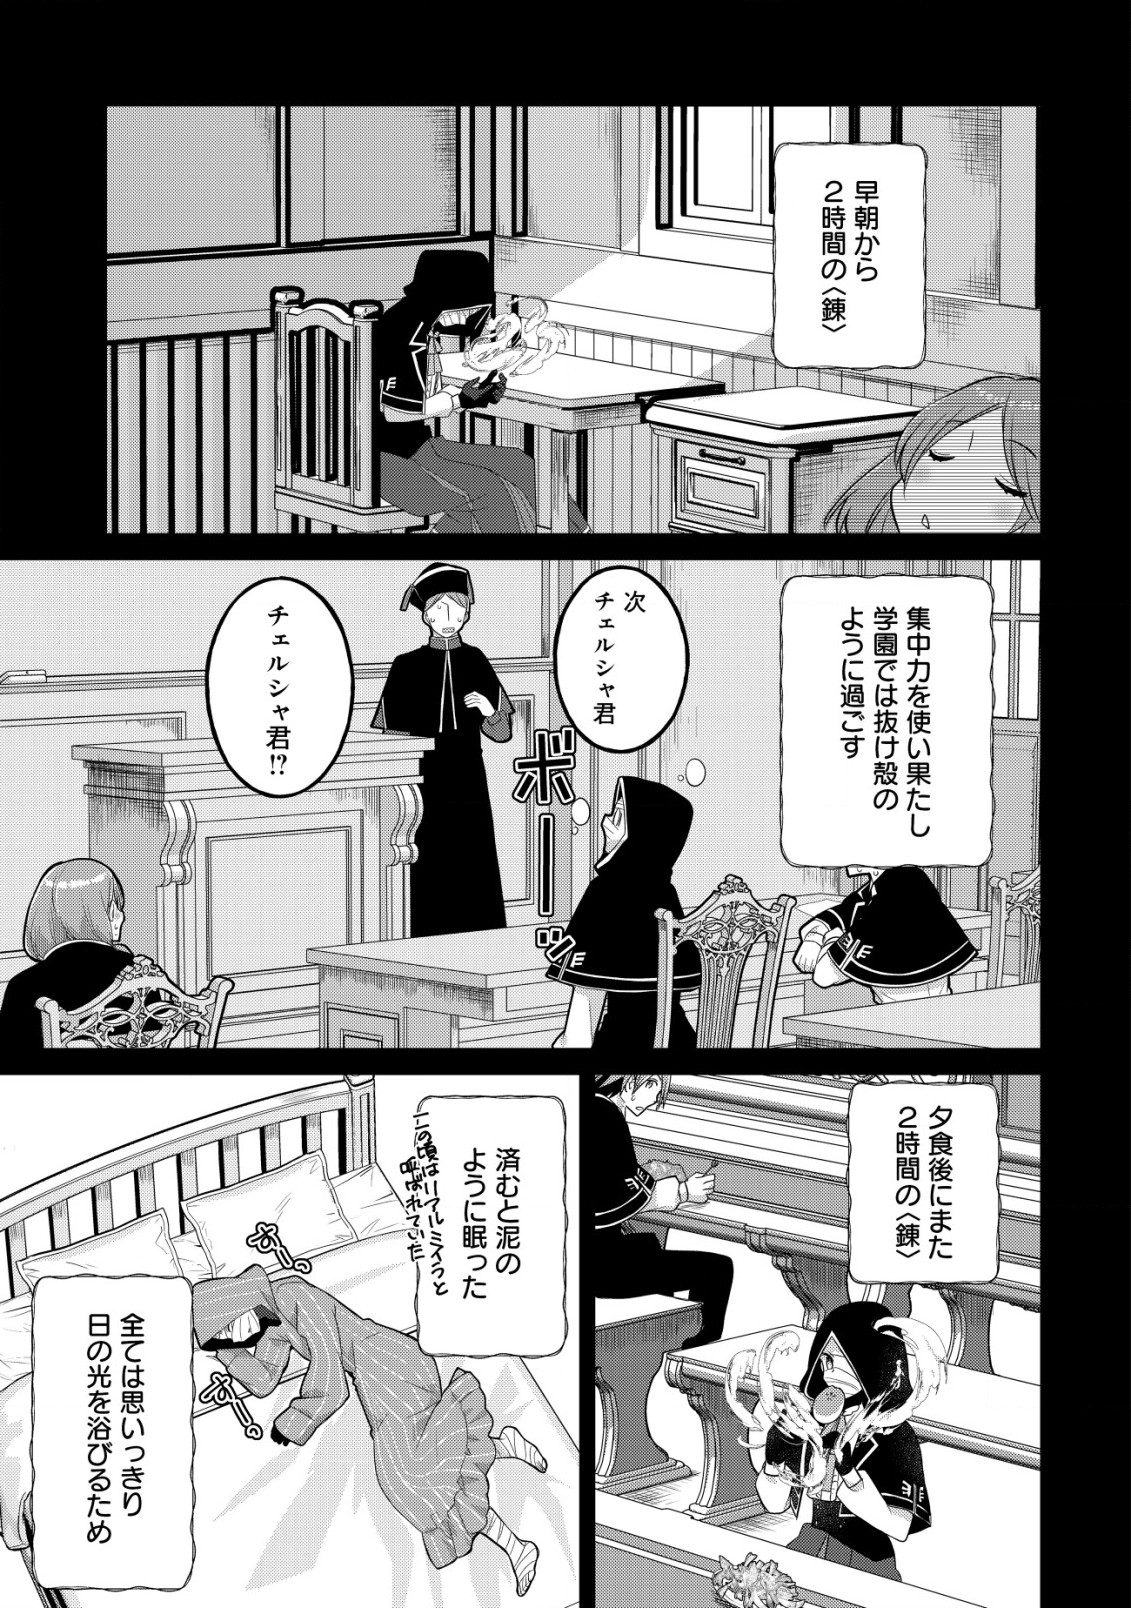 Jagaimo Nouka no Muramusume, Kenshin to Utawareru Made. - Chapter 14 - Page 7